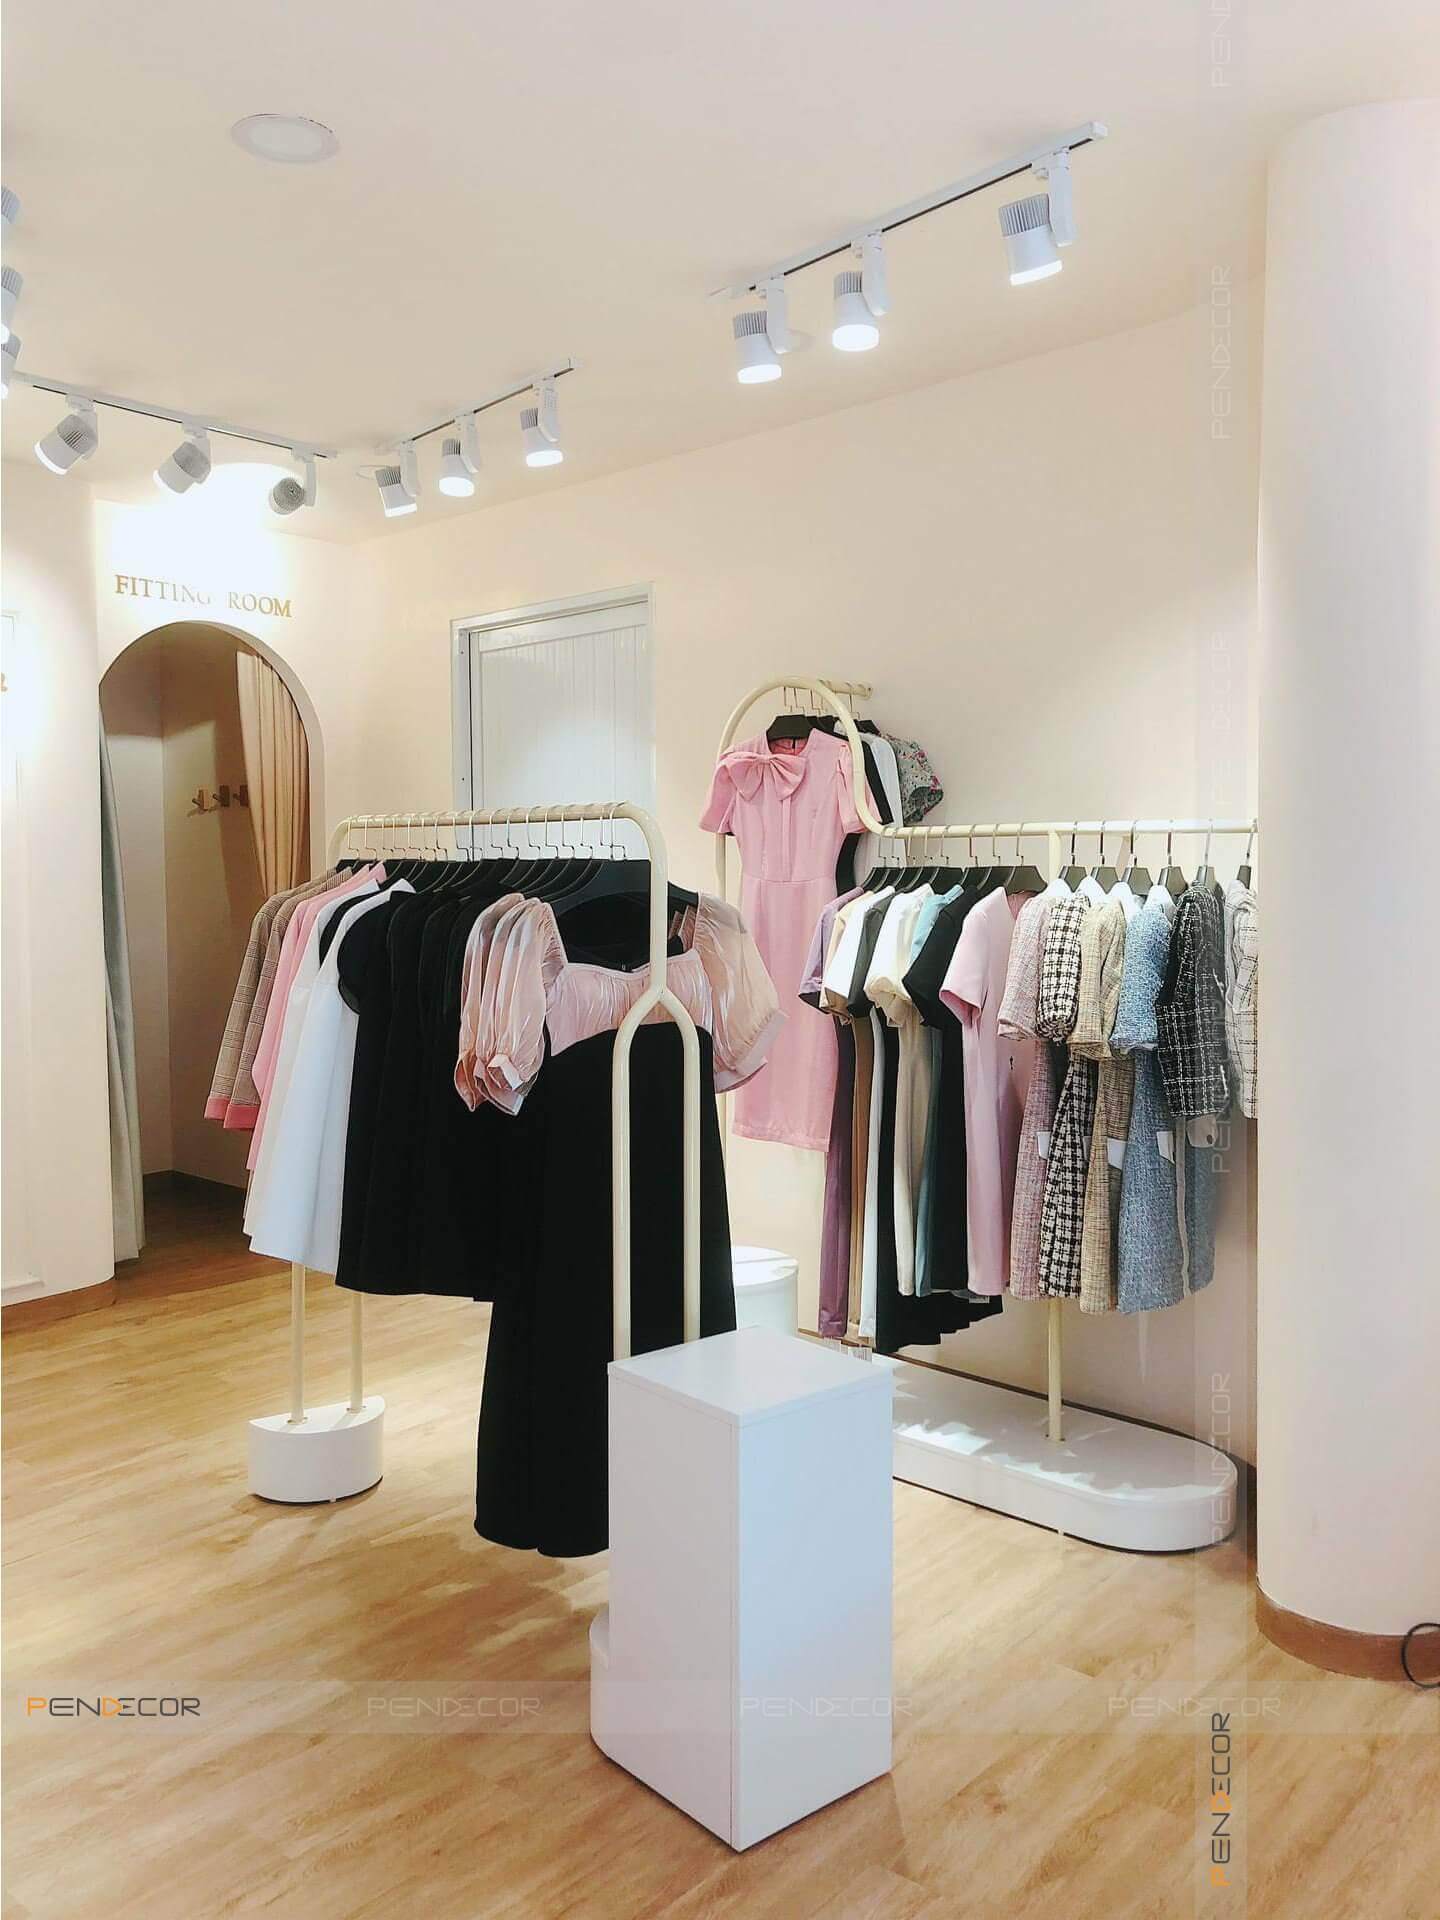 Thiết kế nội thất shop thời trang chiếm vai trò vô cùng quan trọng đối với hoạt động kinh doanh của cửa hàng